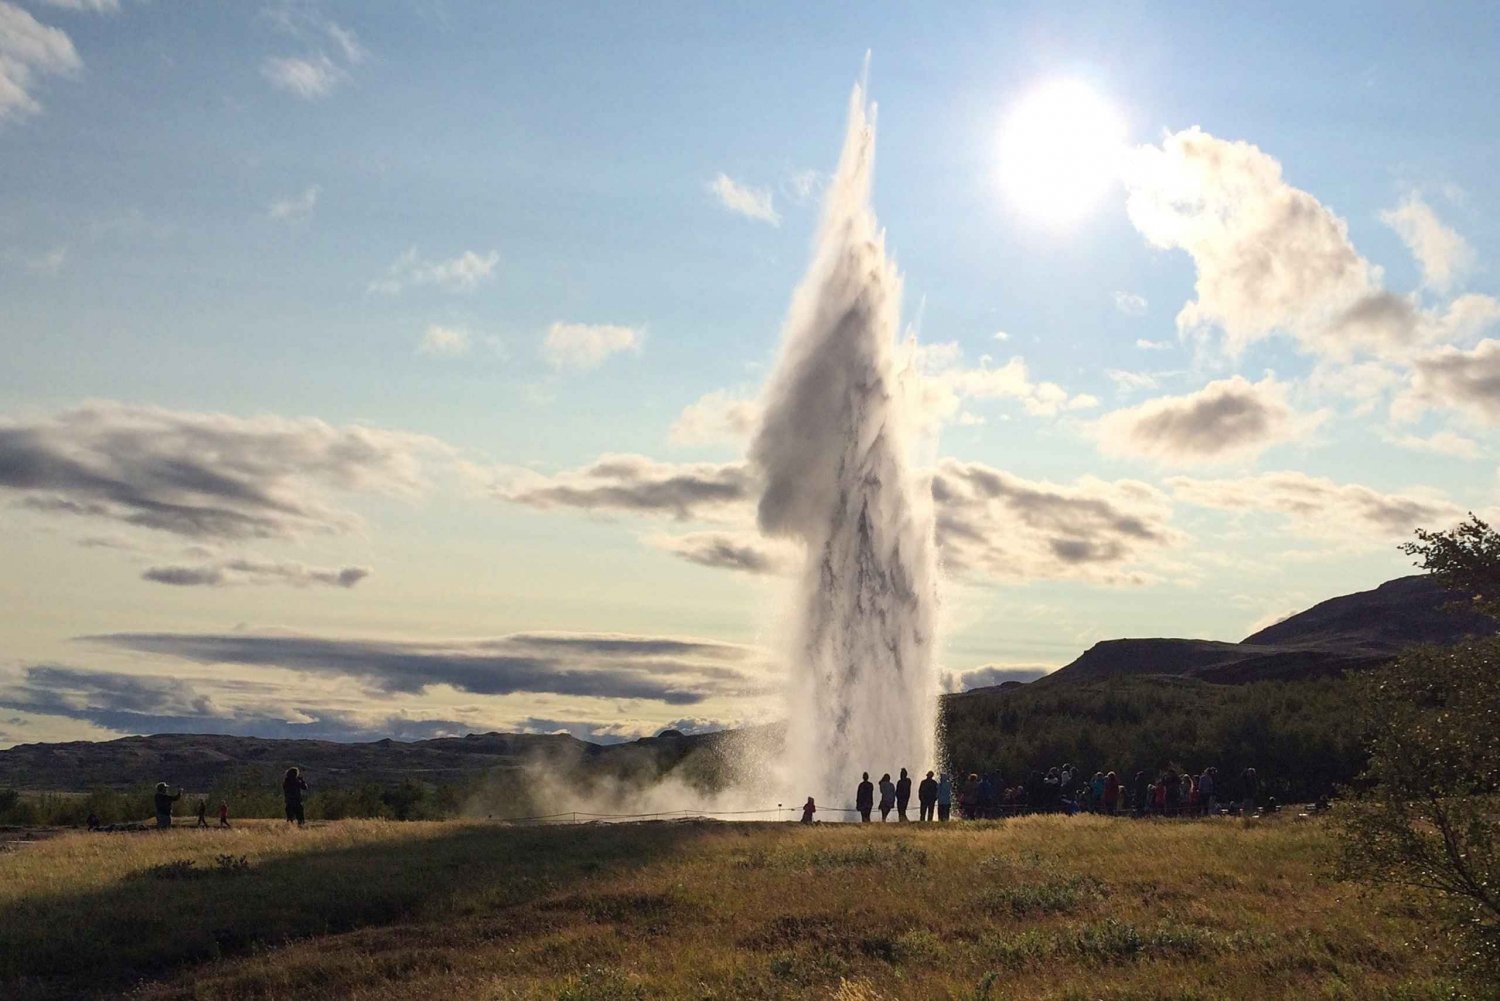 Reykjavik: The Golden Circle Day Tour